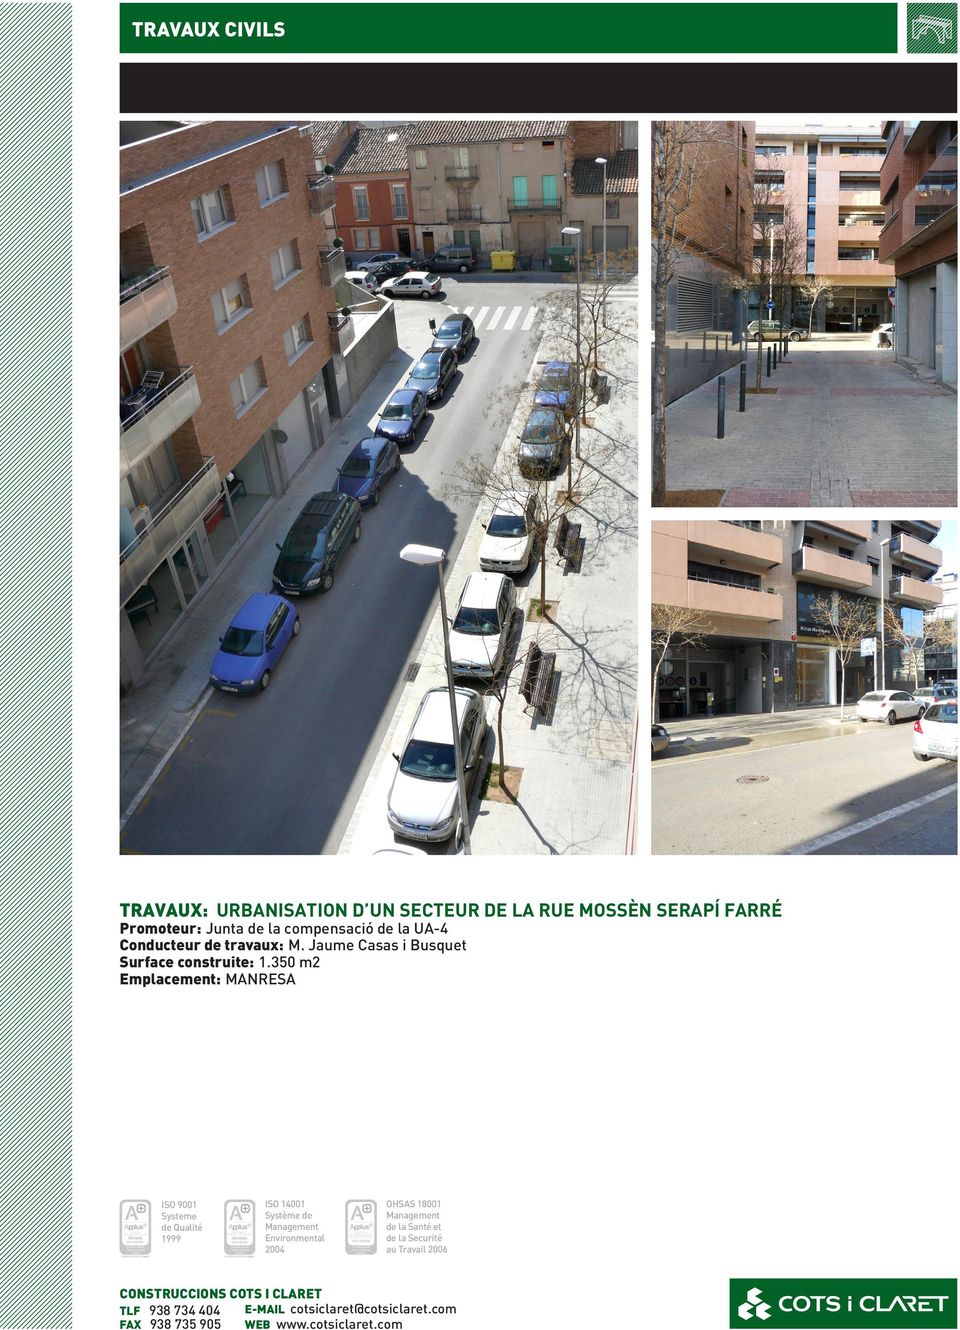 de Jaume Casas BusquetCasas i Busquet Surface construite: 1.350 m2m2 Superfície construïda: 1.